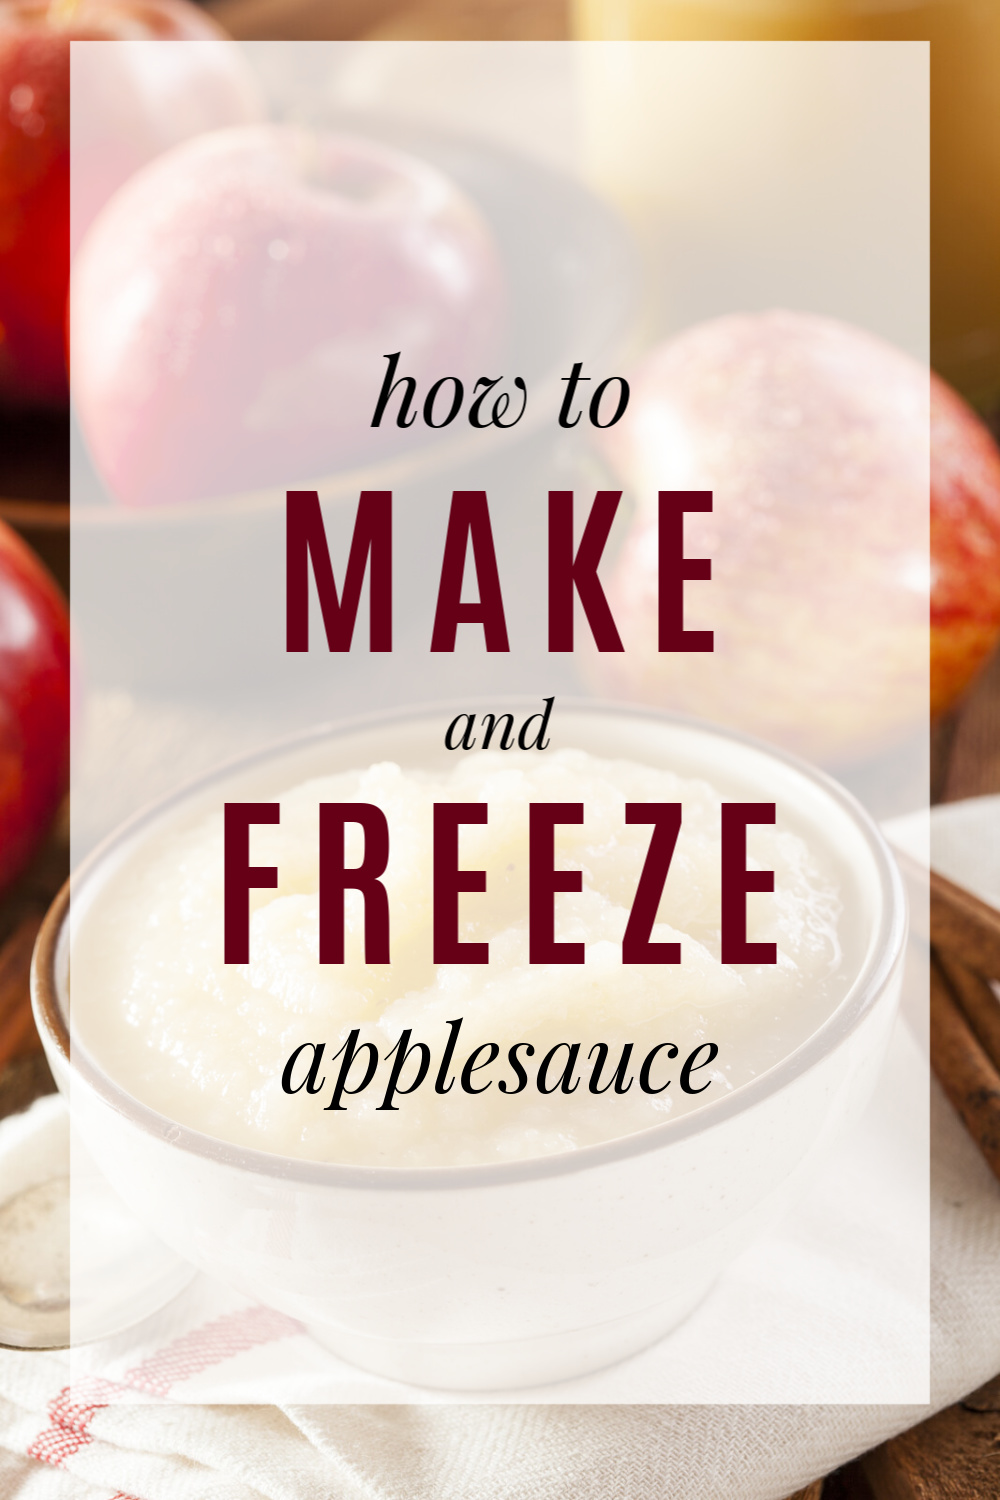 https://www.frugallivingnw.com/wp-content/uploads/2019/09/homemade-applesauce-2.jpg